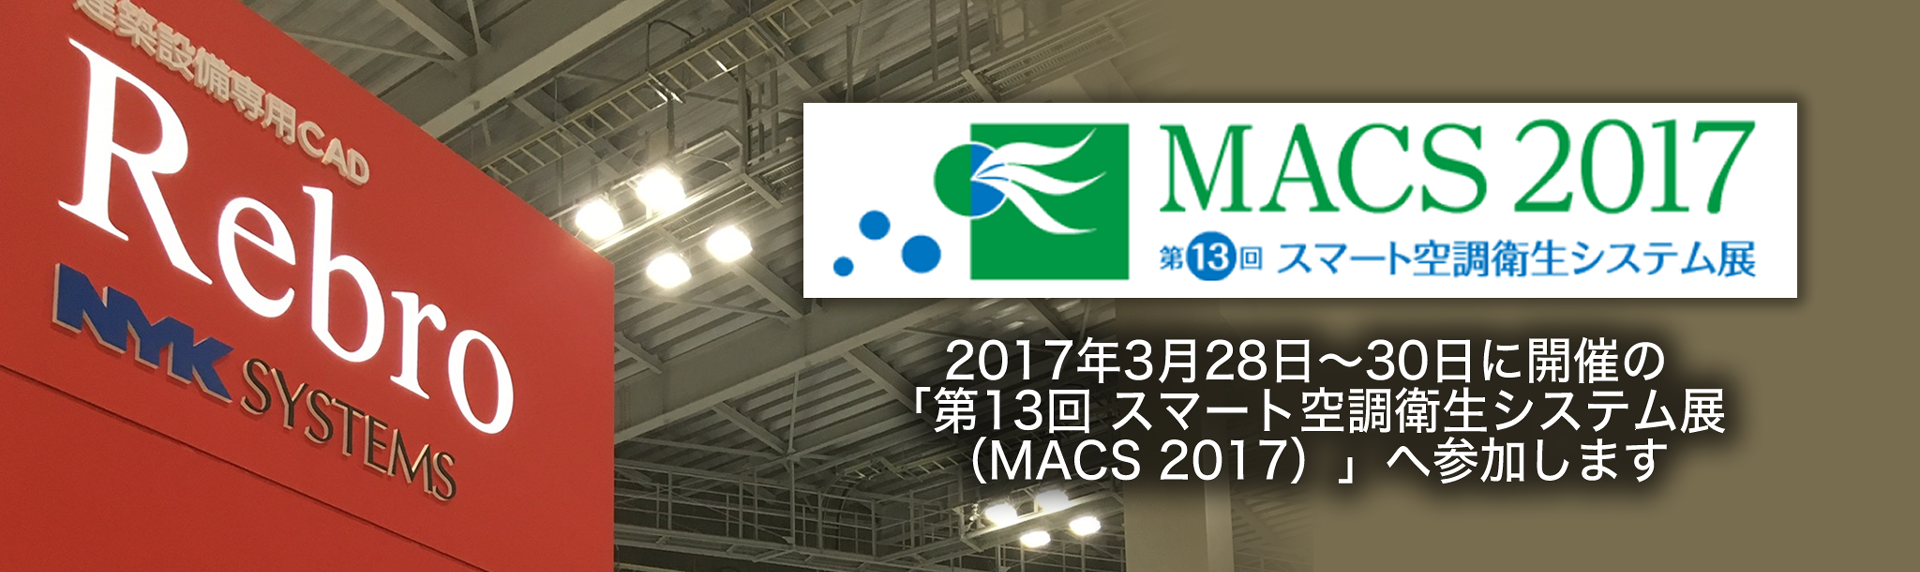 MACS2017